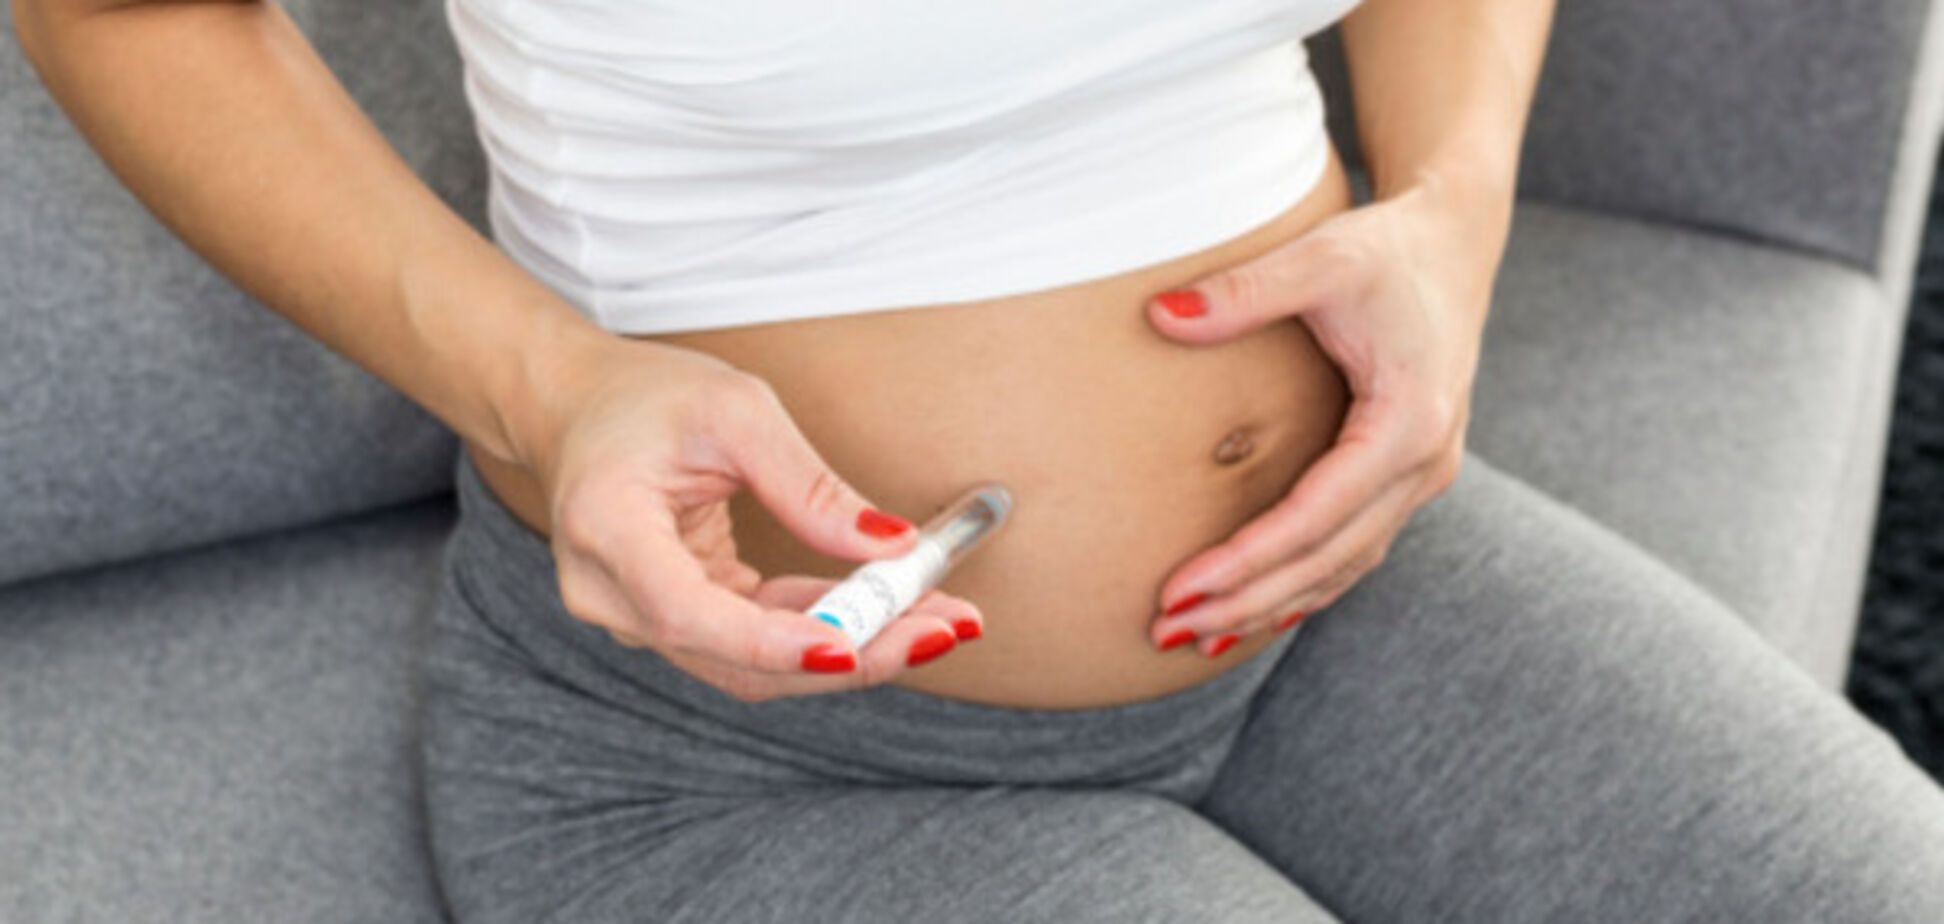 Зачатие ребенка в зимний период повышает риск развития гестационного диабета